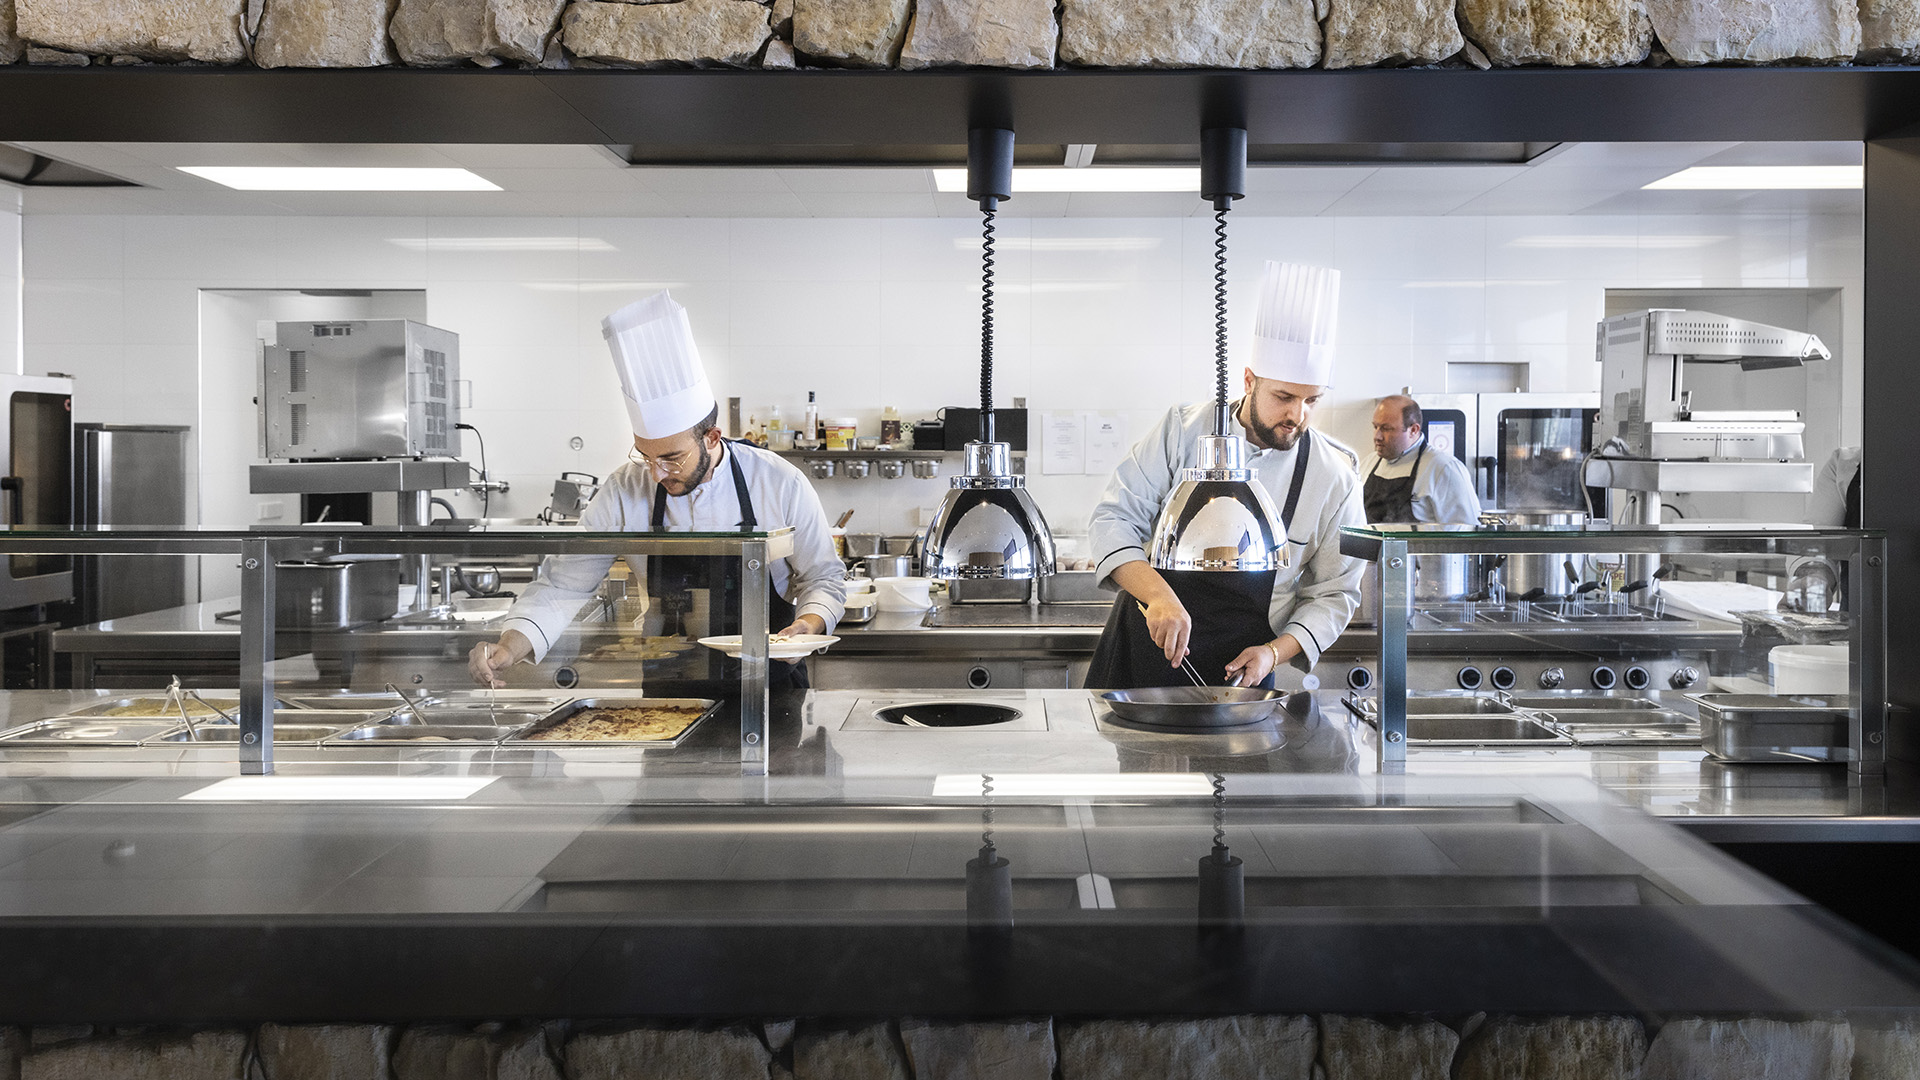 Prospettiva frontale della cucina del Piz Boè dove tre cuochi stanno preparando il pranzo da fornire ai clienti nell'area self-service.